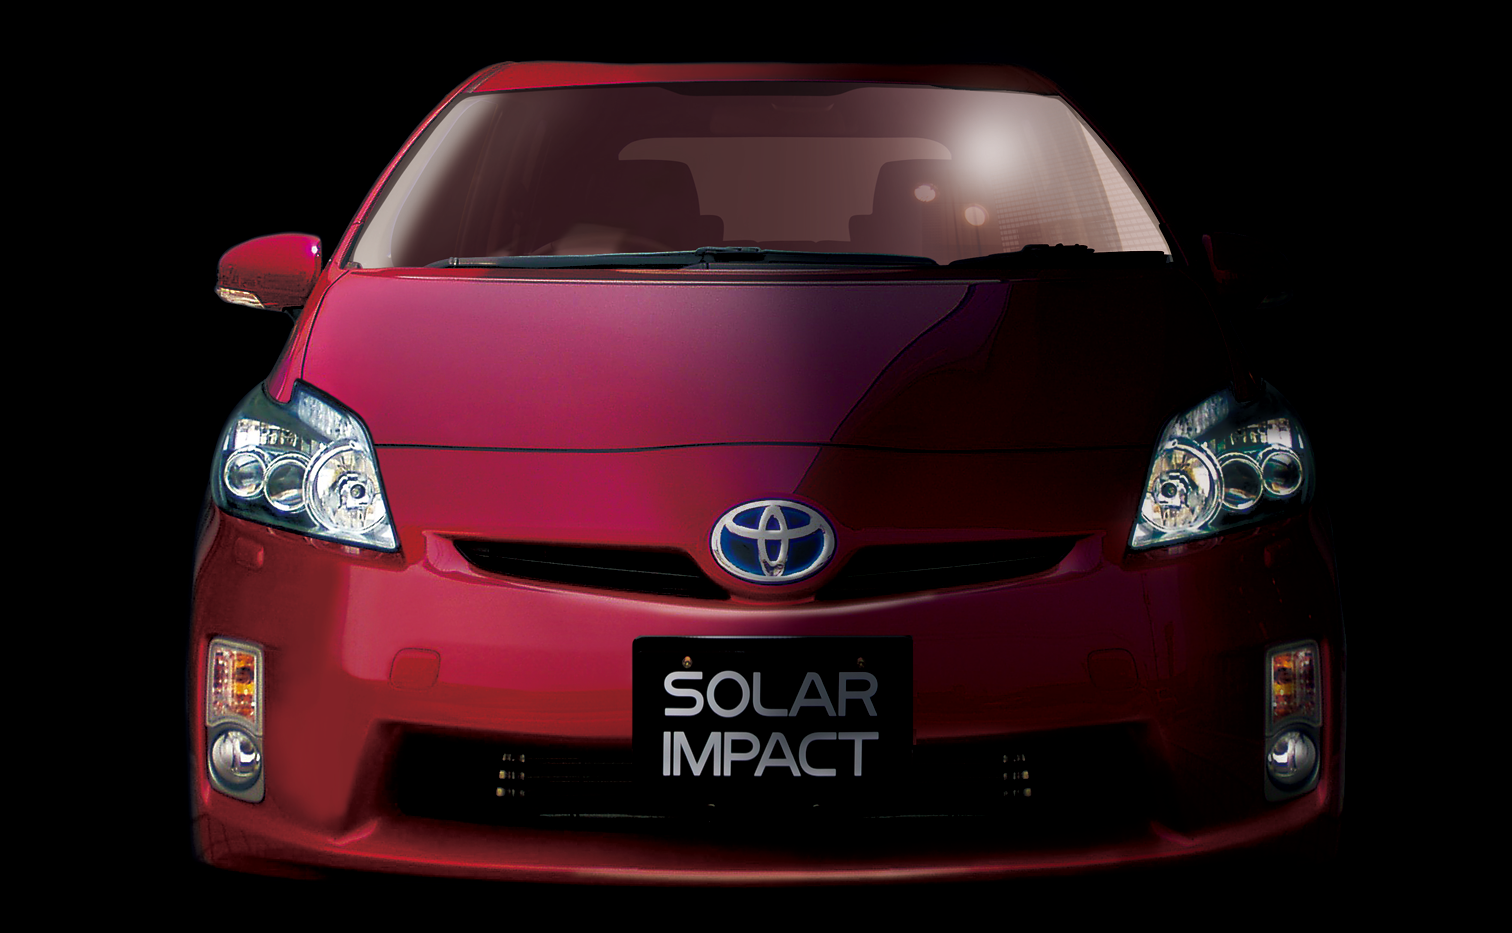 自動車の新カスタムパーツ 高級断熱フロントガラス Solar Impact Zvw30プリウス とのコラボレーション車両が登場 ドレスアップパーツ販売会社 ブローデザインとの協力により実現 株式会社ゼロのプレスリリース